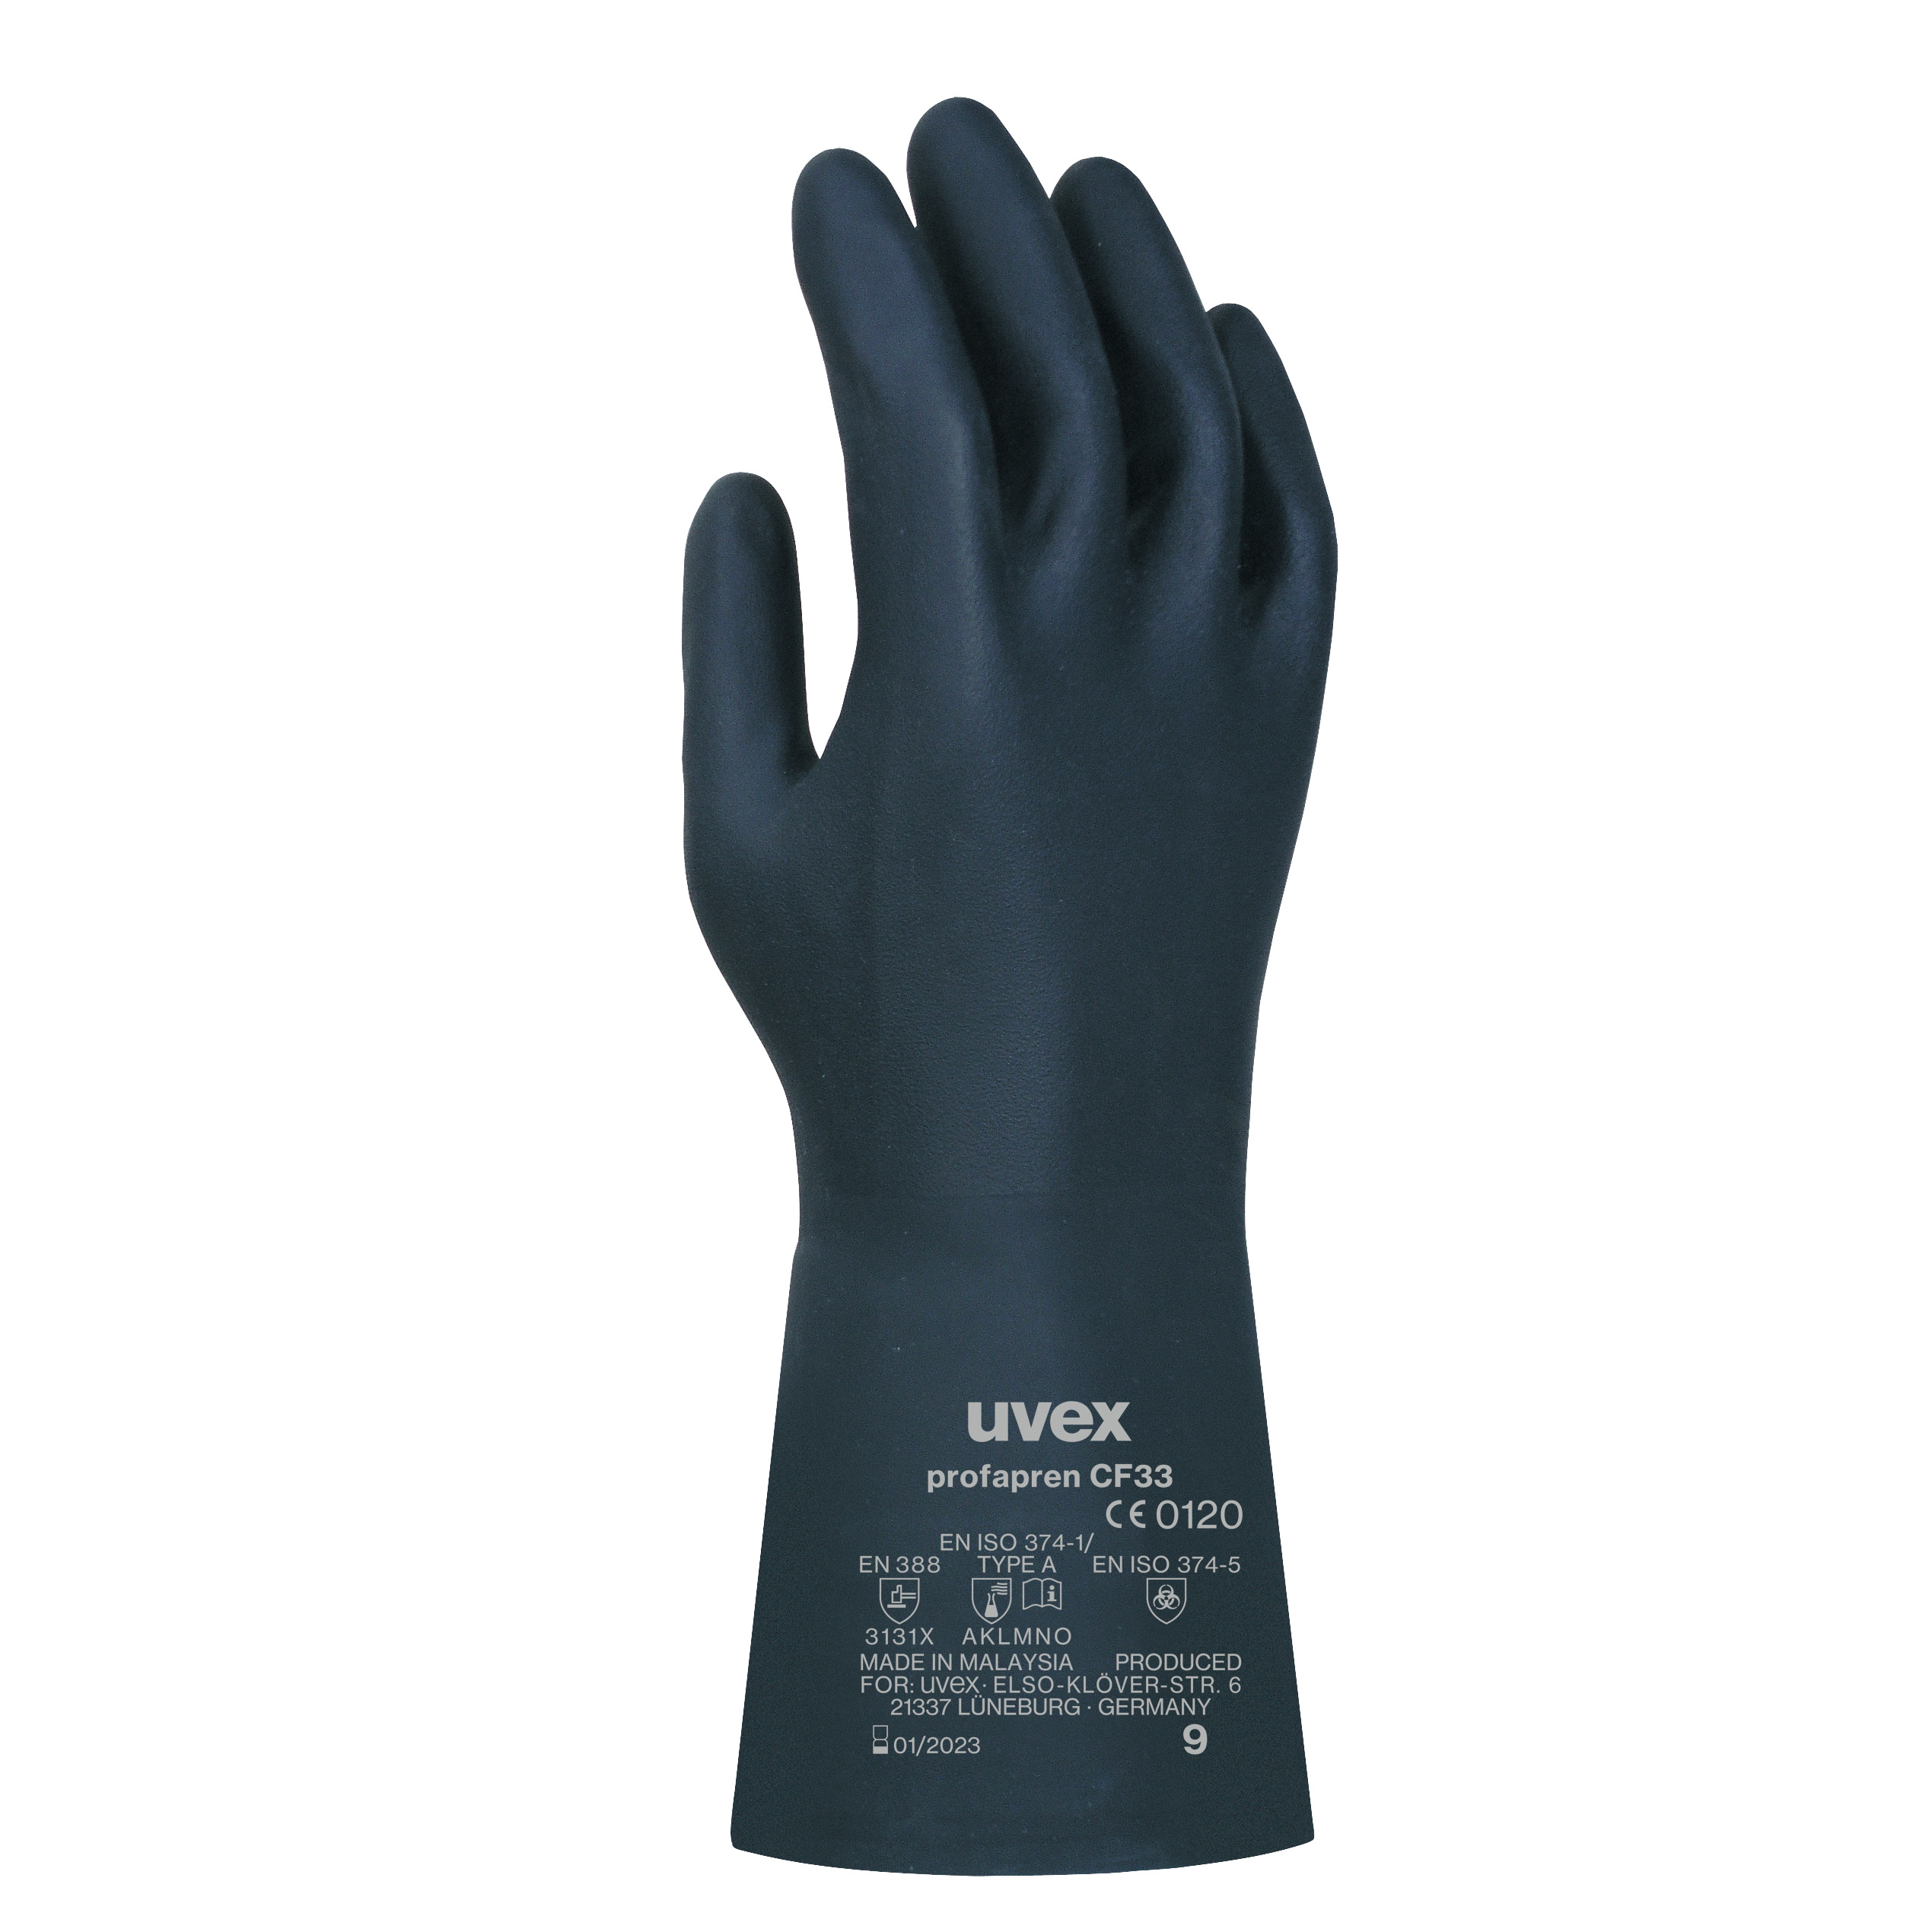 uvex profapren CF33 Chemikalienschutzhandschuhe, Größe 10